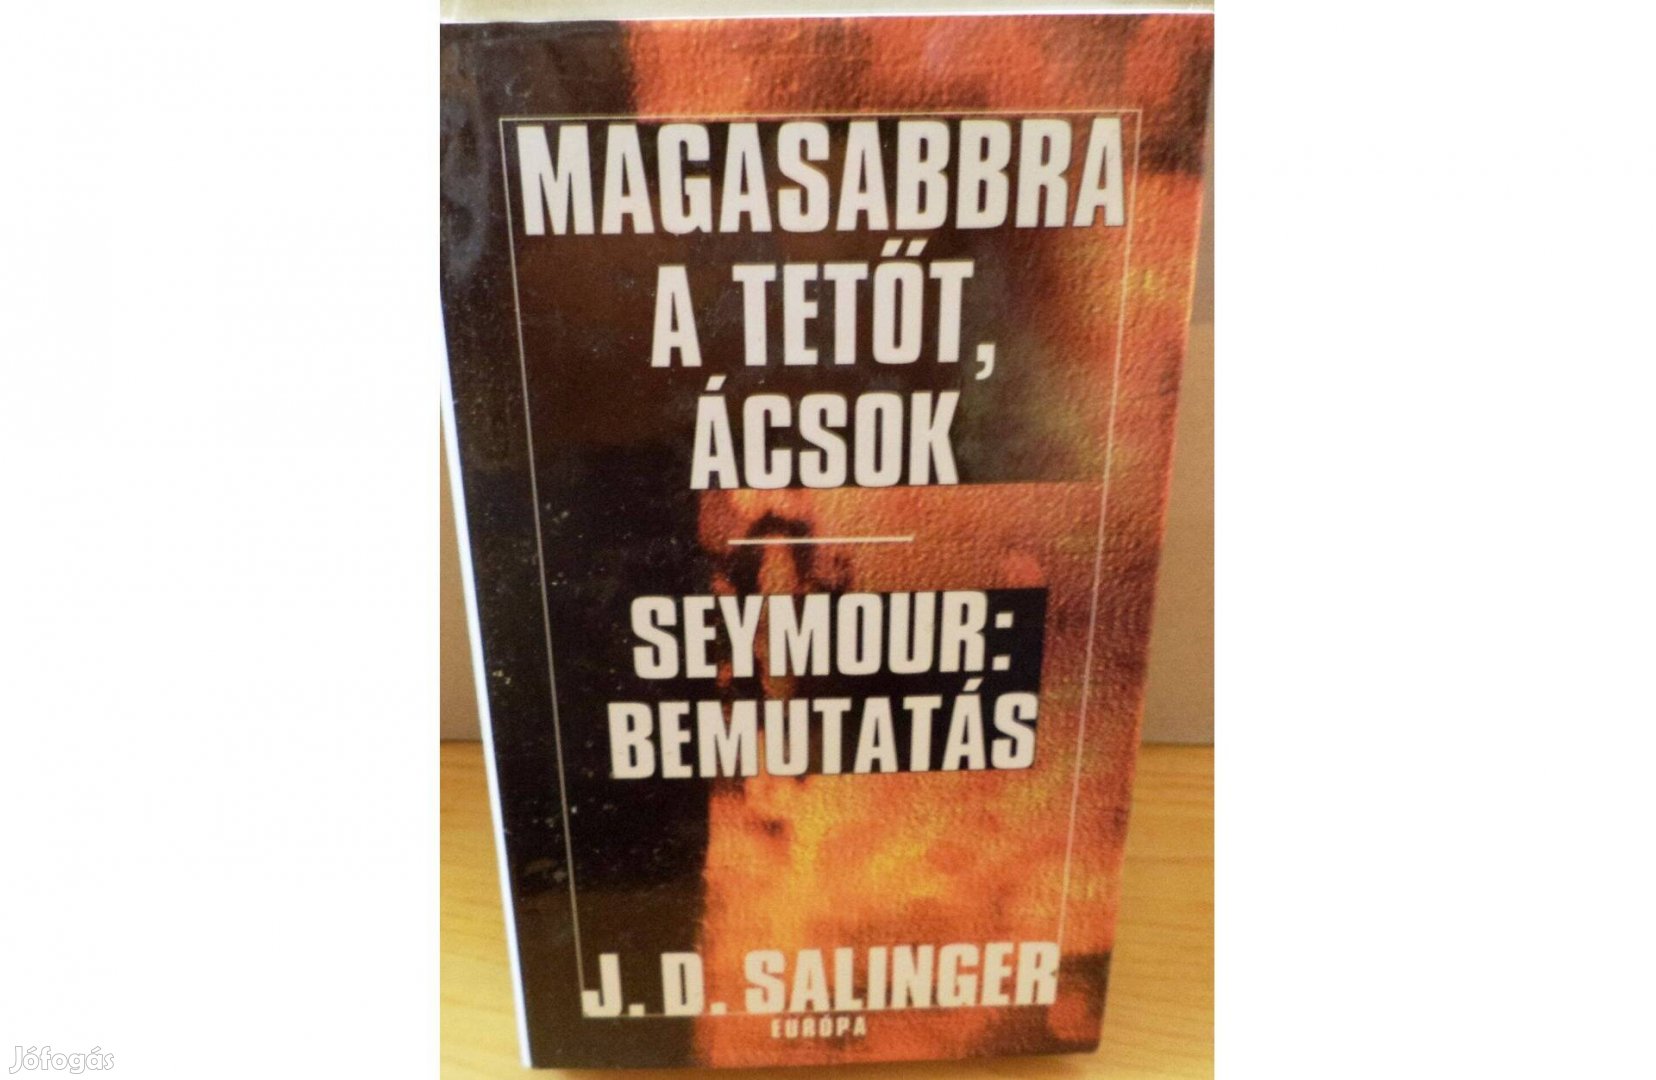 J.D. Salinger: Magasabbra a tetőt ácsok - Seymour: Bemutatás